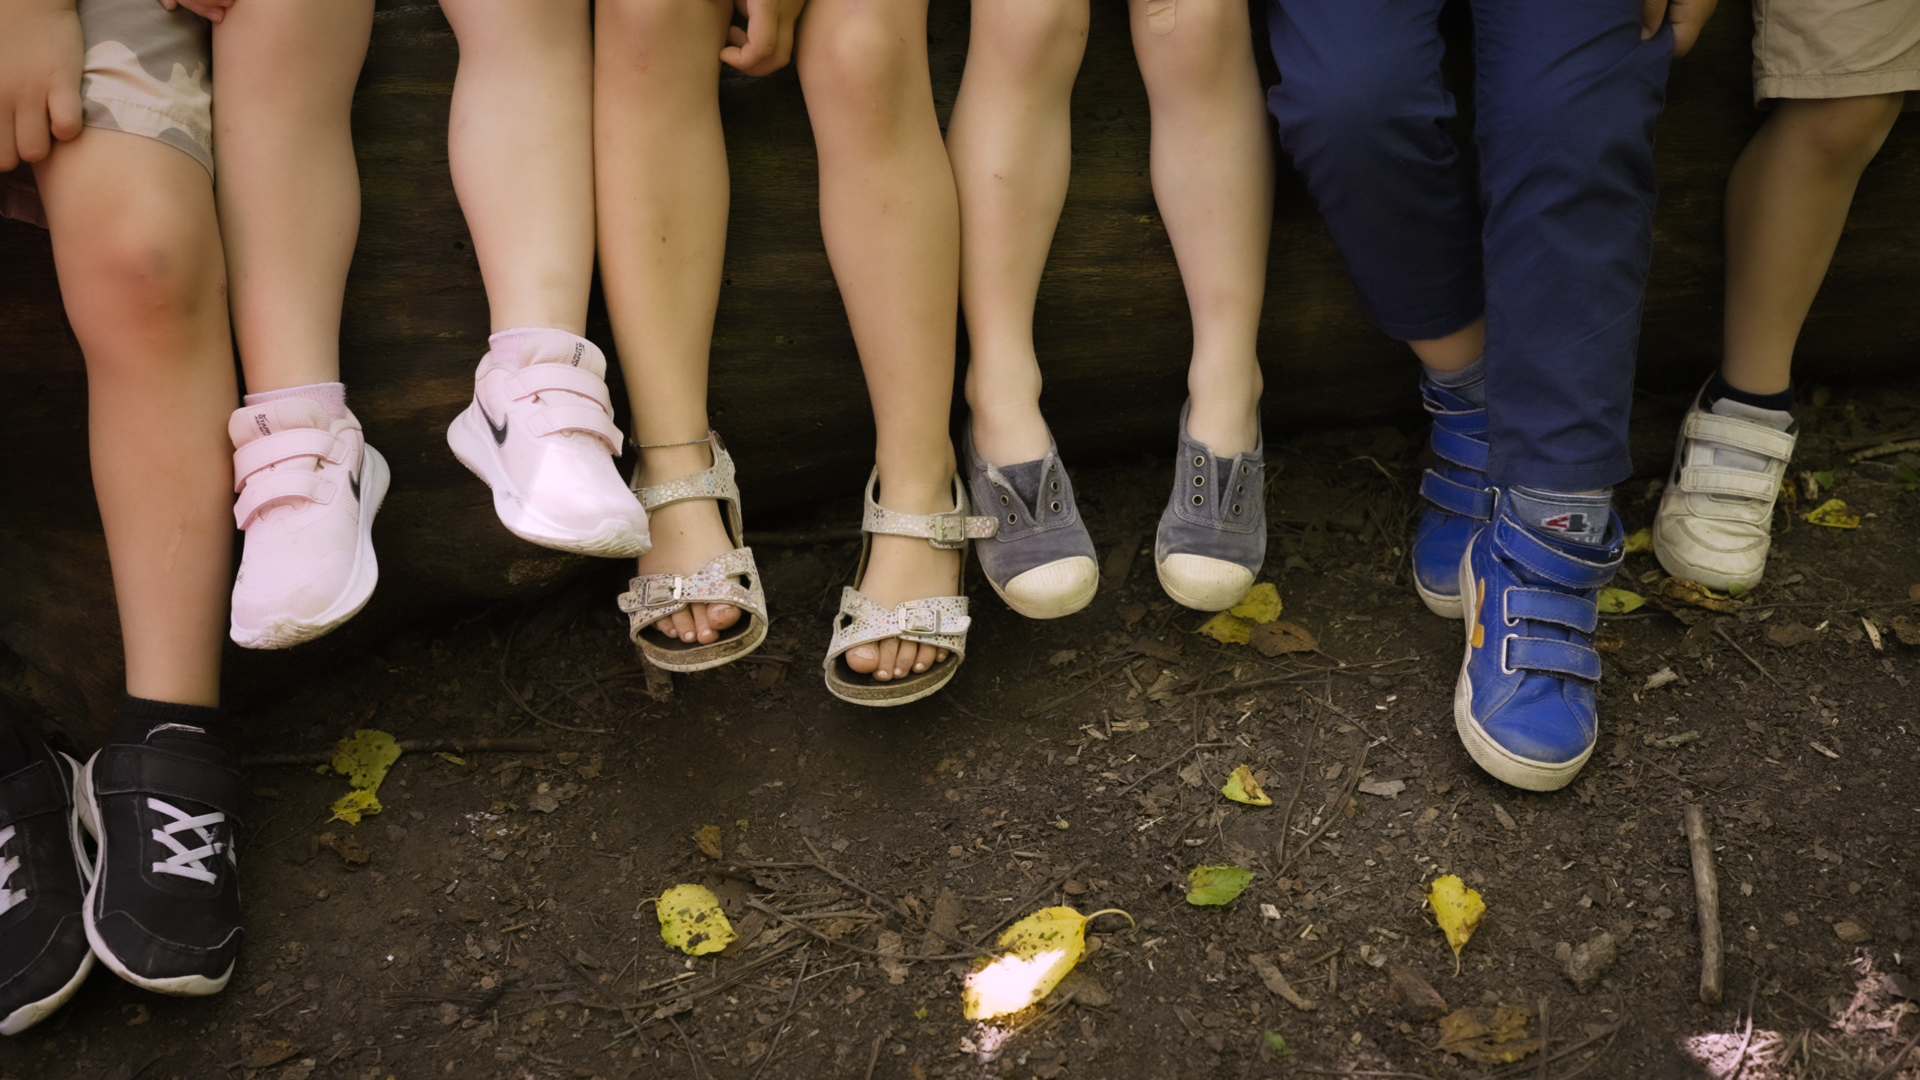 Sei bambini seduti su una panchina del parco della scuola montessoriana, si vedono solo le gambe dalle ginocchia in giù.